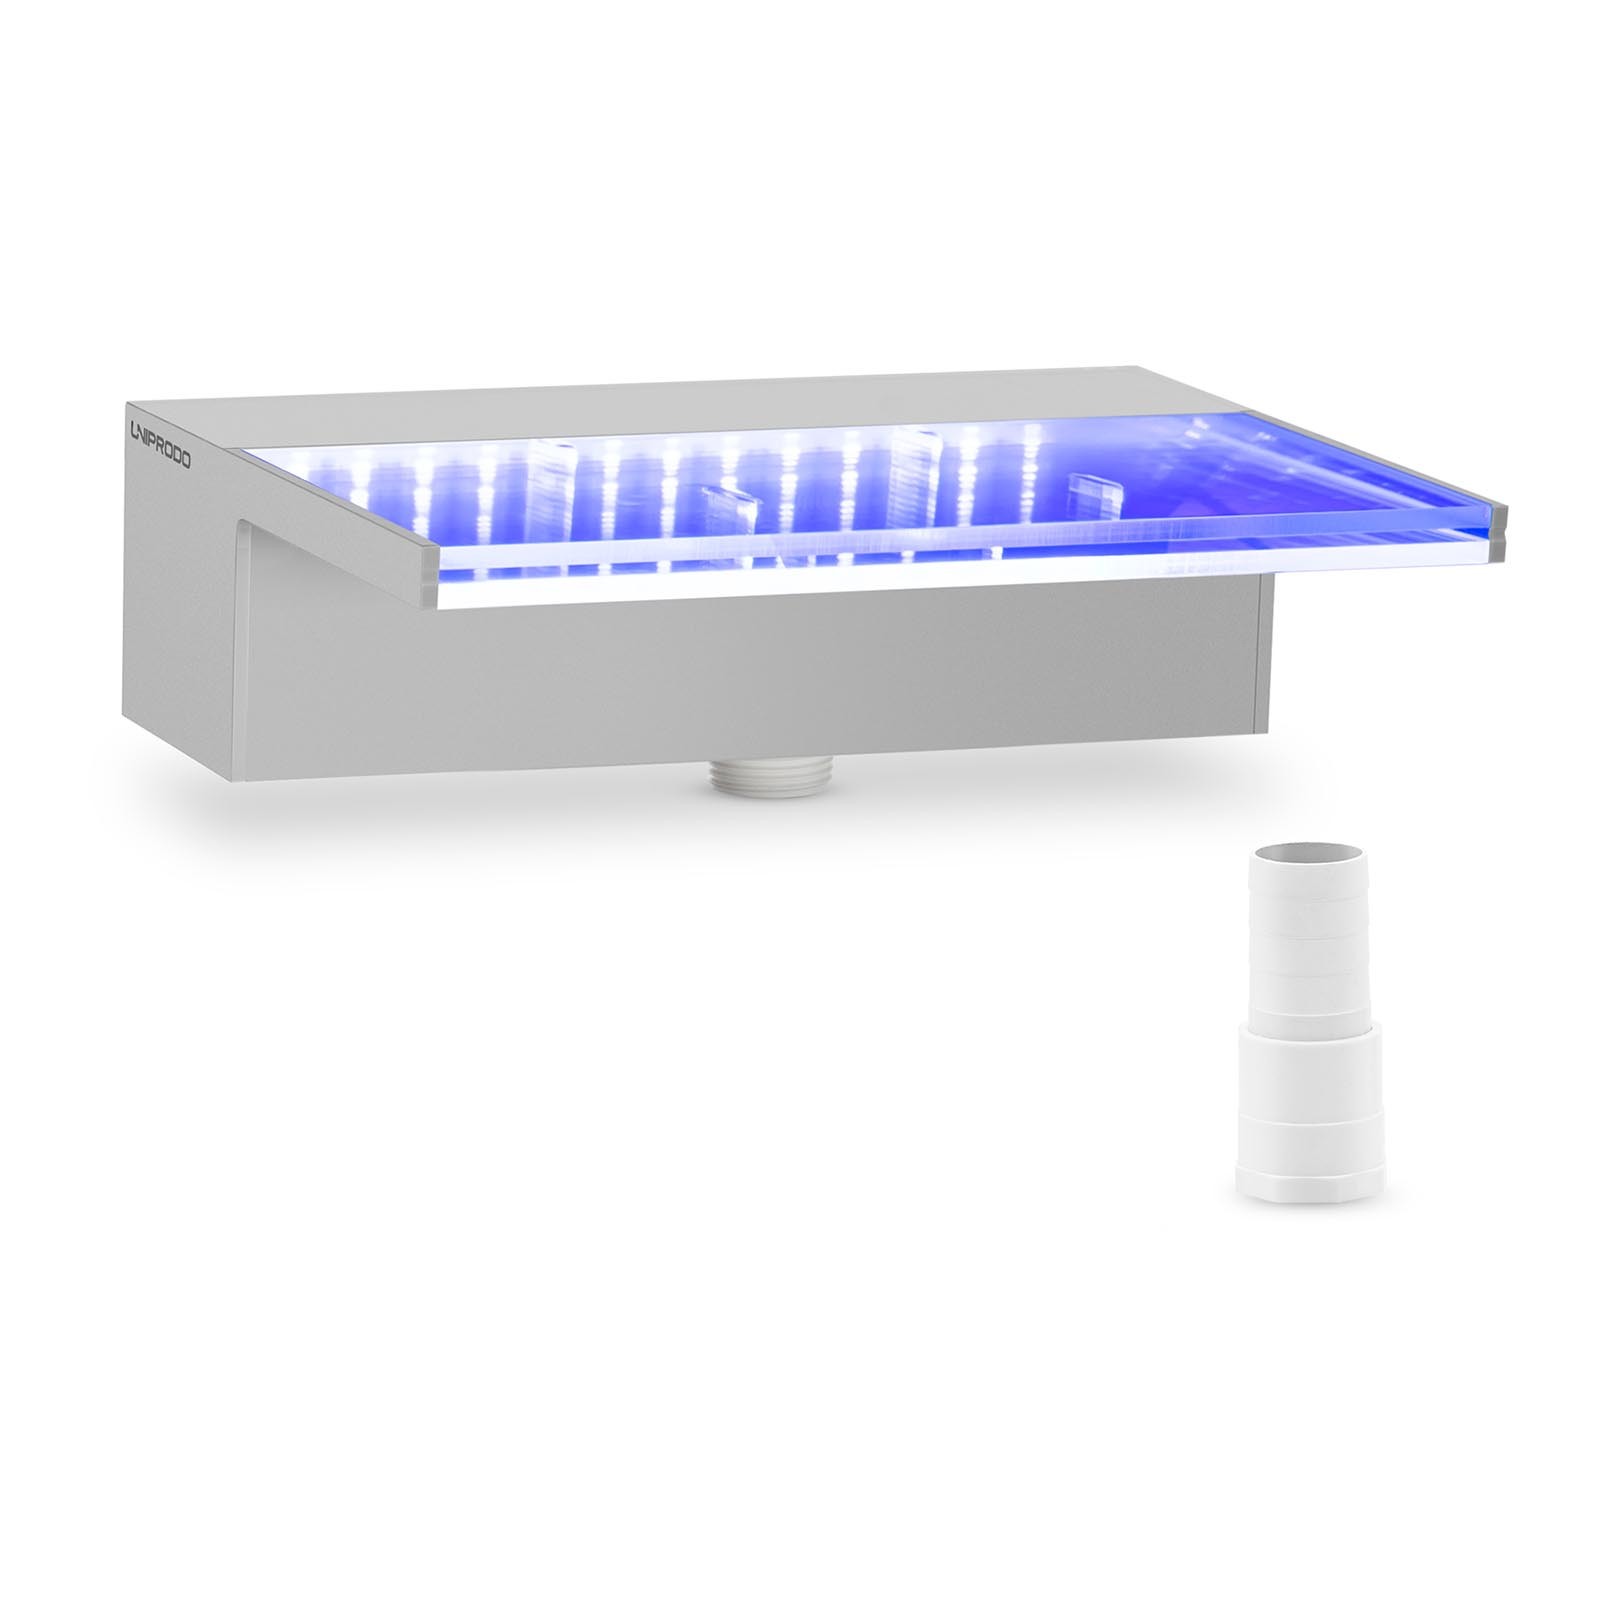 Uniprodo Douche - {{net_lengte}} cm - LED-verlichting - Blauw / Wit - {{lip_lengte}} mm waterafvoer